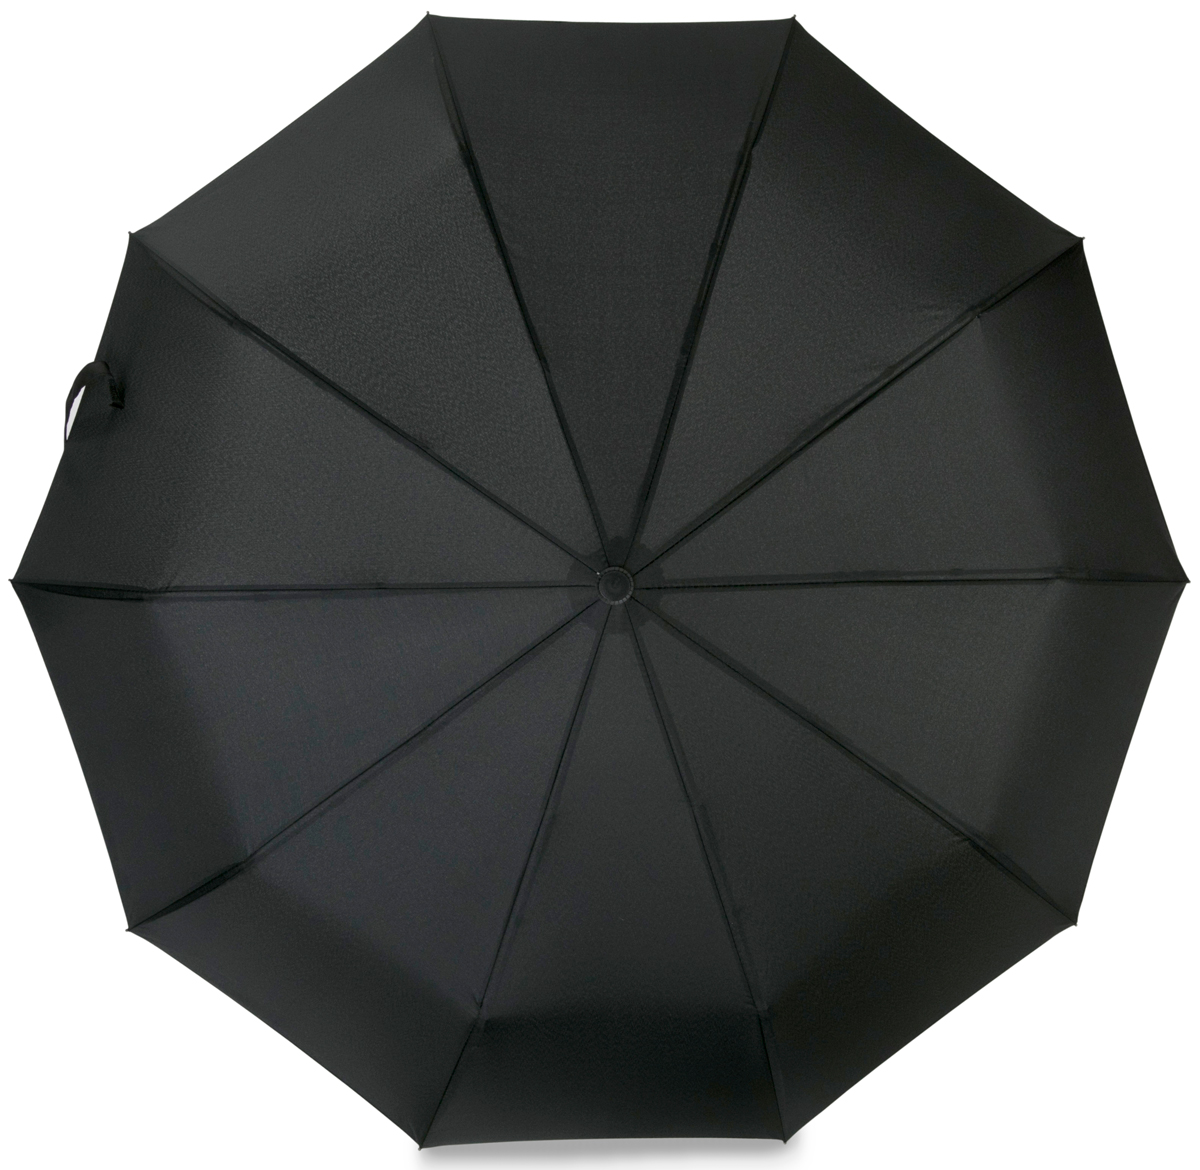 Зонт Baudet, автомат, 3 сложения, цвет: черный. 10598-1